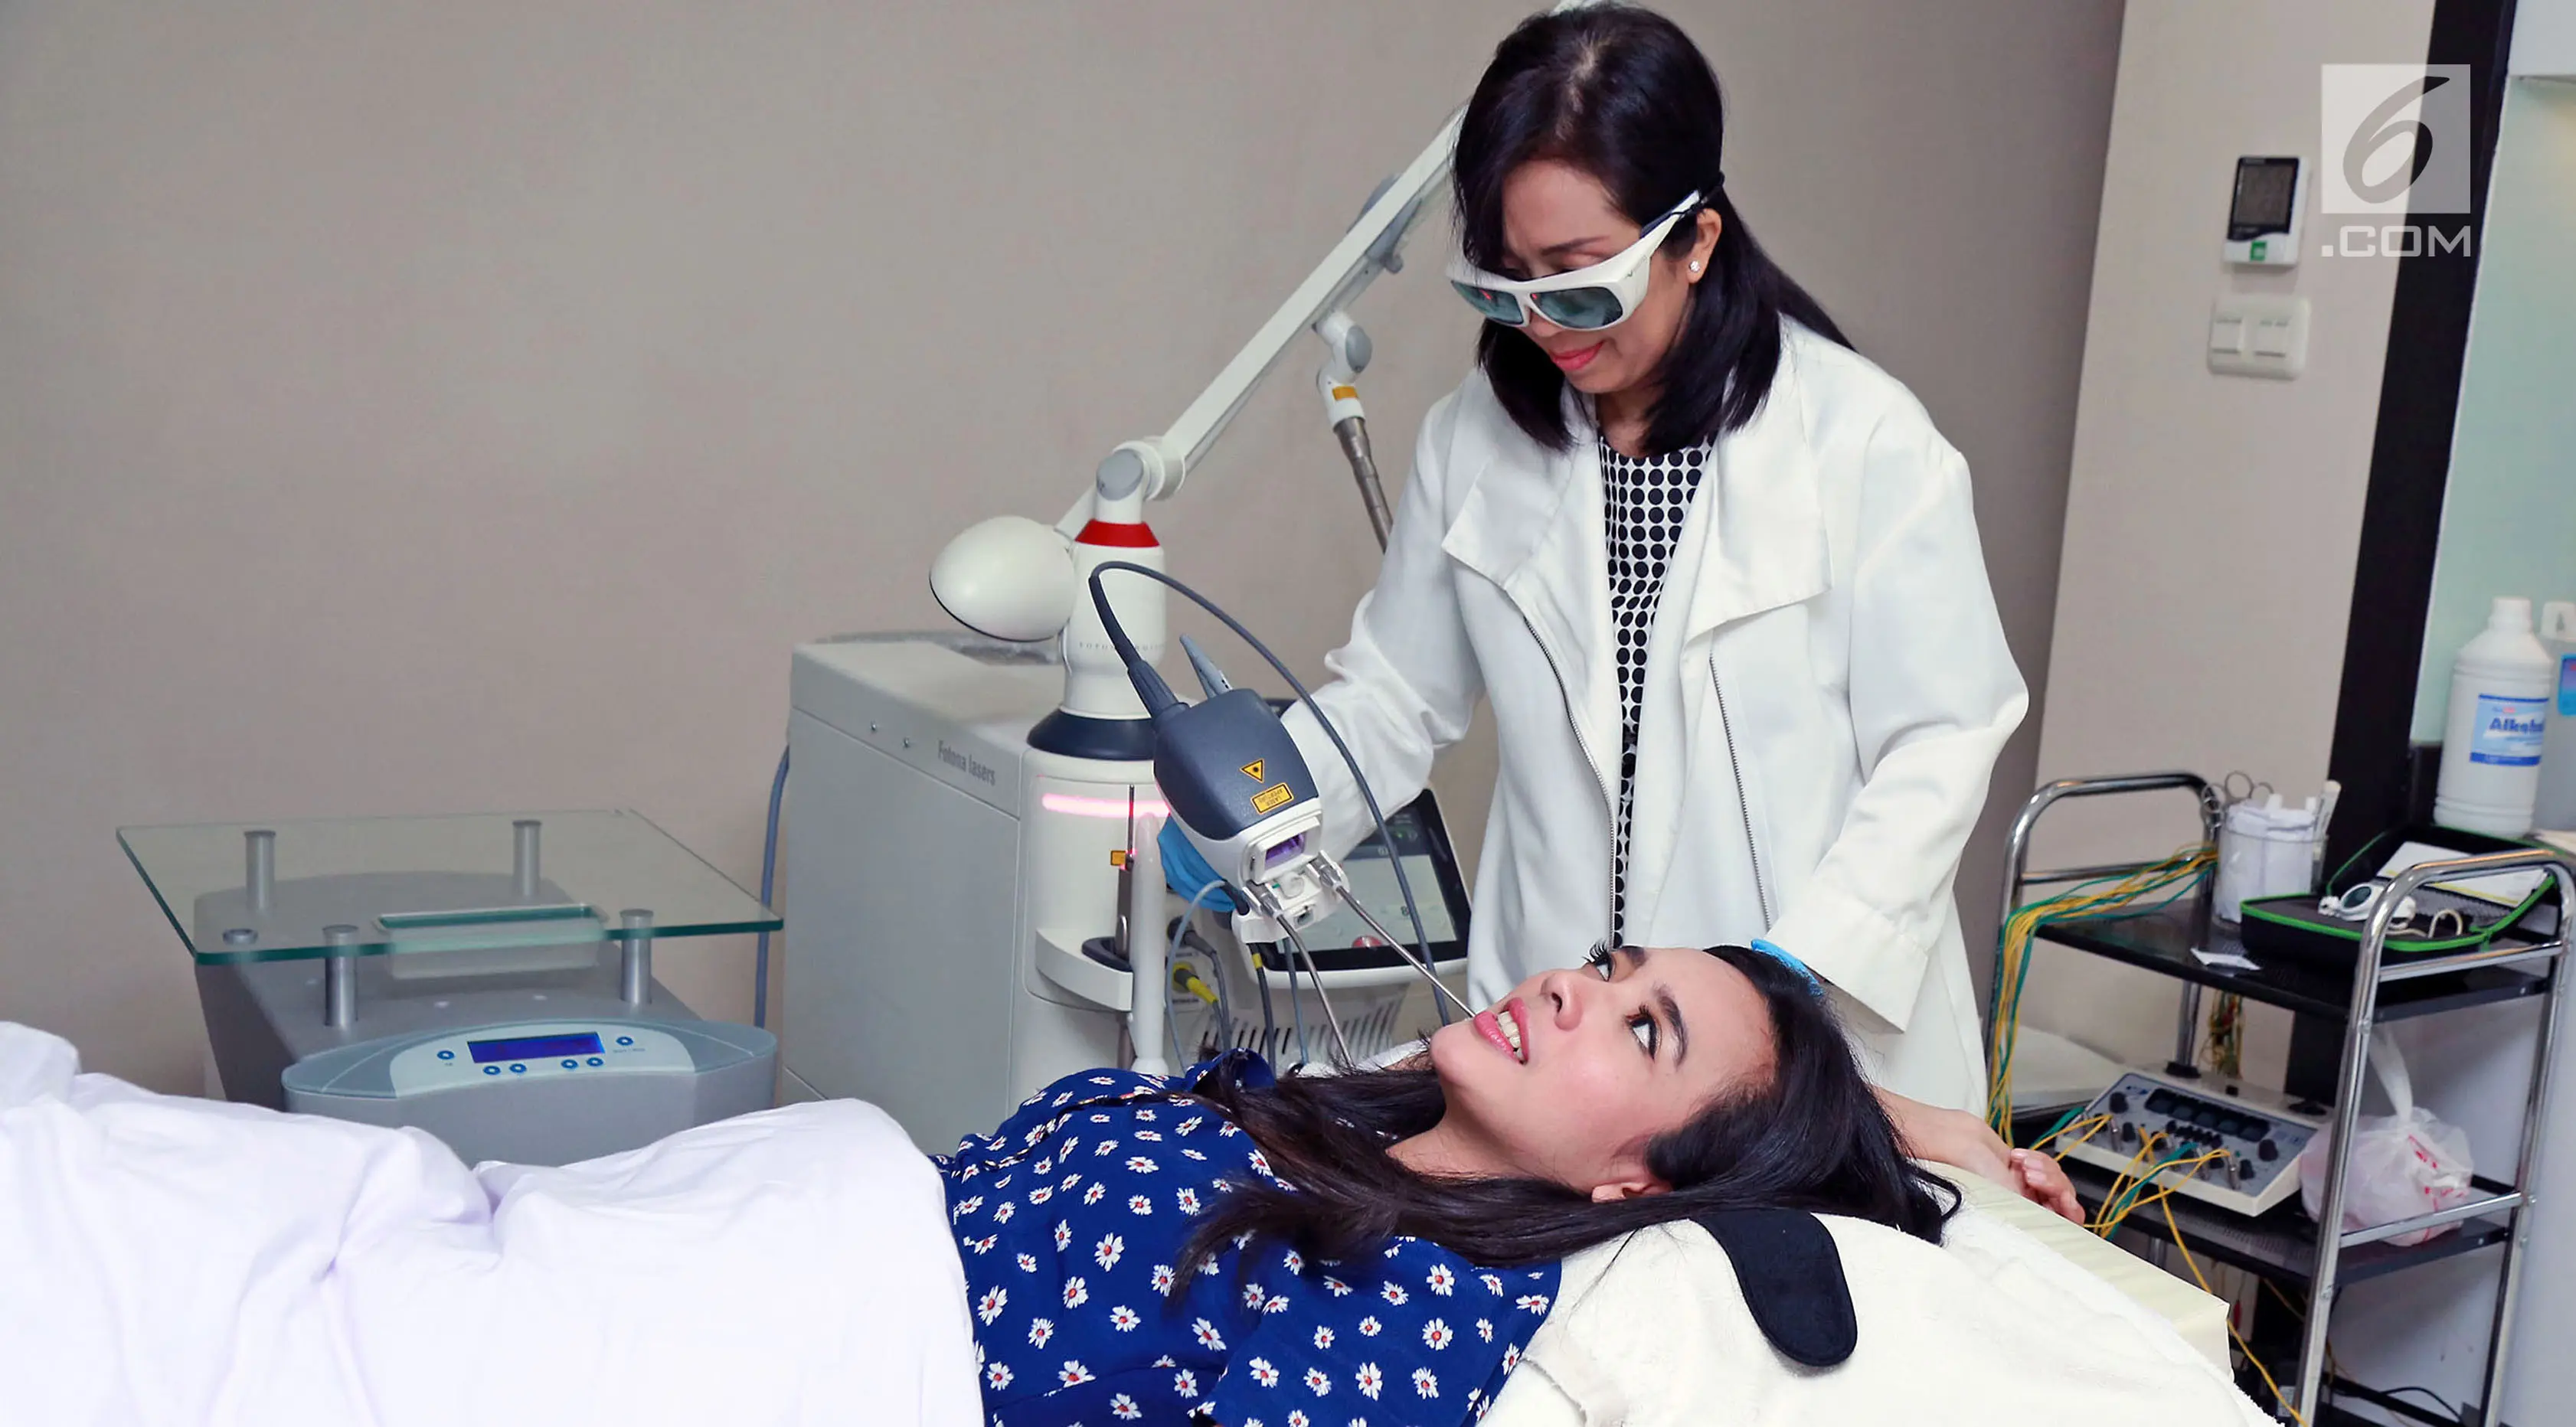 Dhea Ananda tengah menerima treatment kecantikan dari dr. Patricia dari Klinik Beauty Inc, Jakarta. (Herman Zakharia/Liputan6.com)